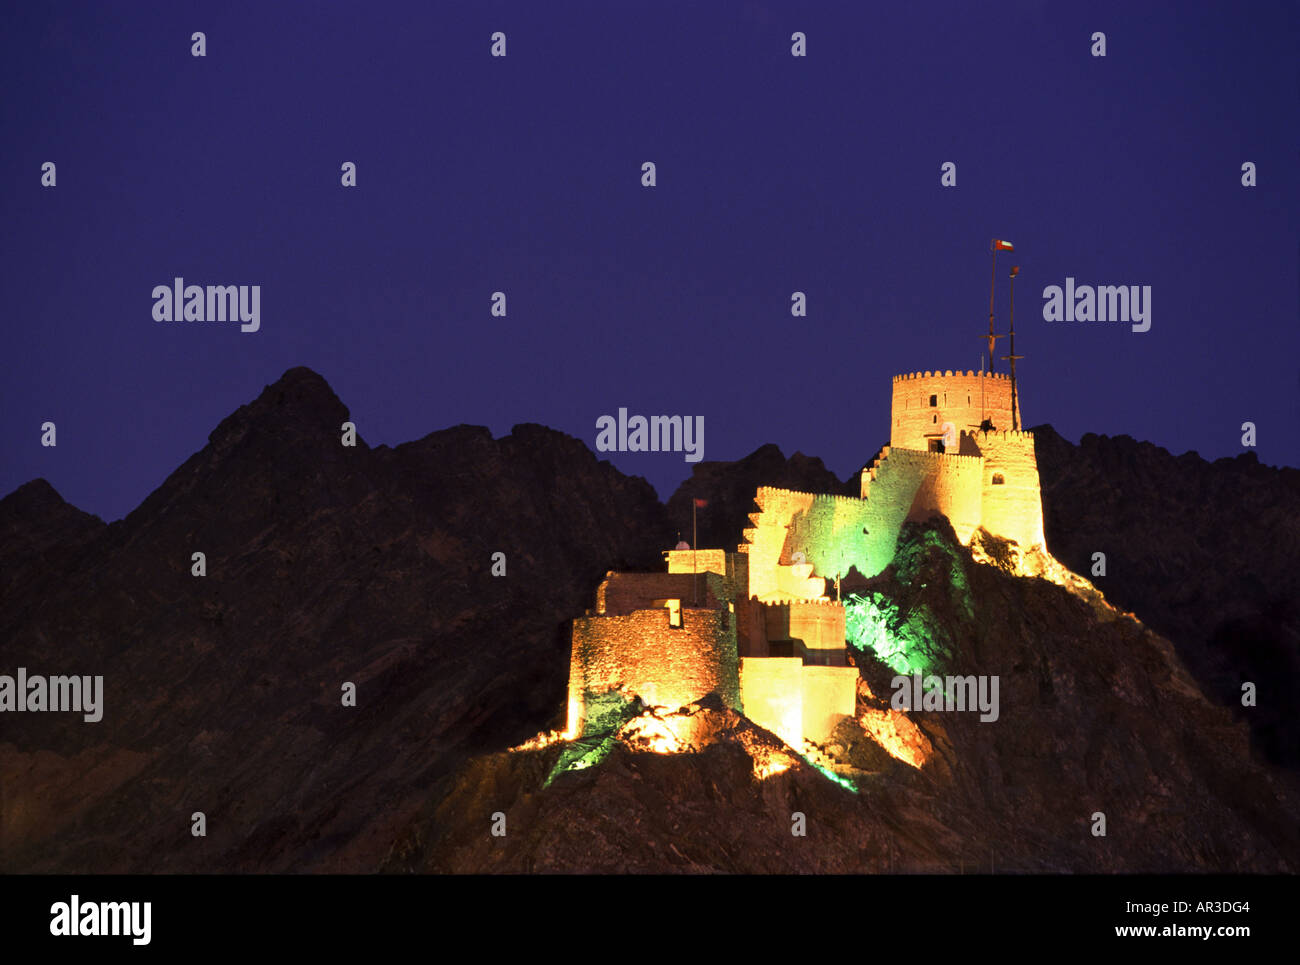 Festung in Mutrah, in der Nähe von Muscat Mutrah, Oman Nahost Stockfoto